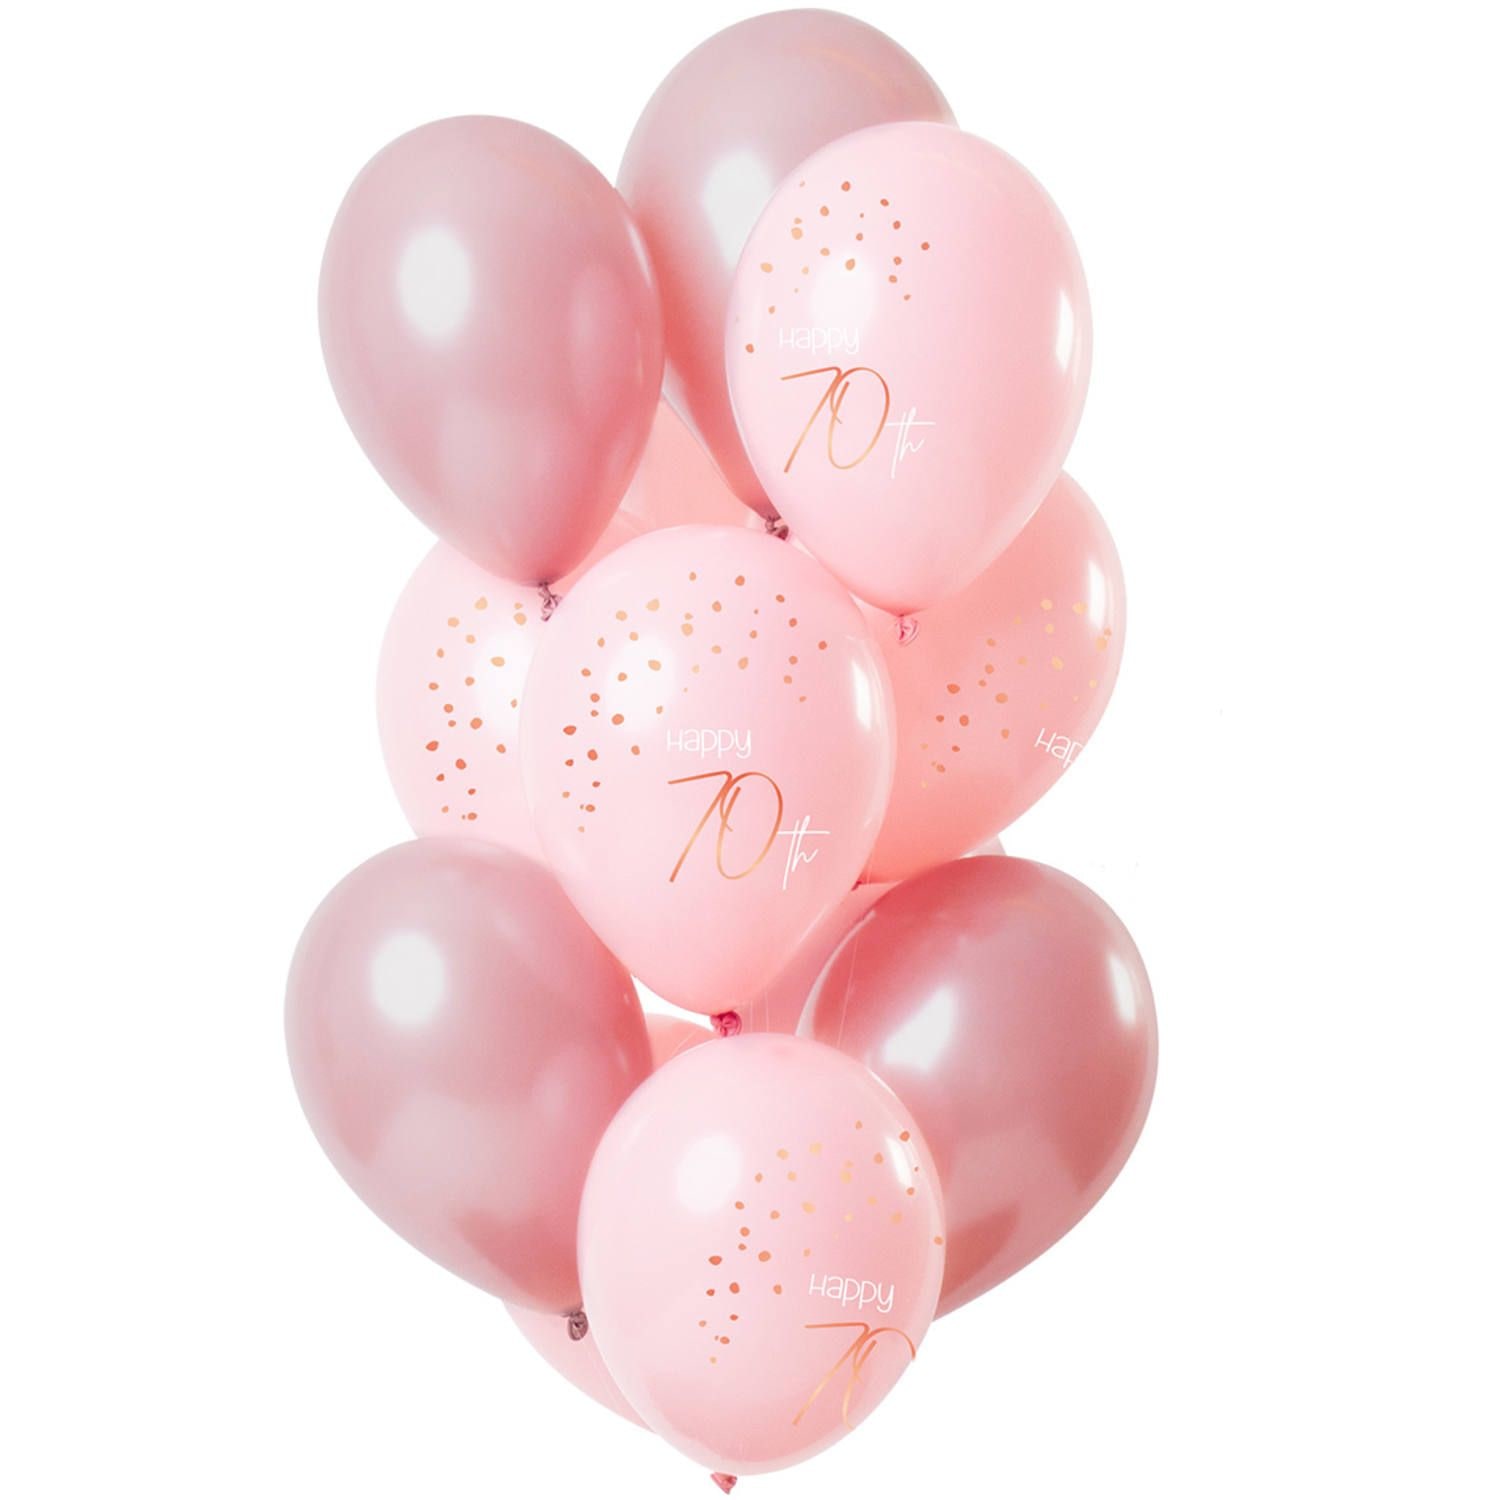 Elegant lush blush ballonnen 70 jaar 12 stuks